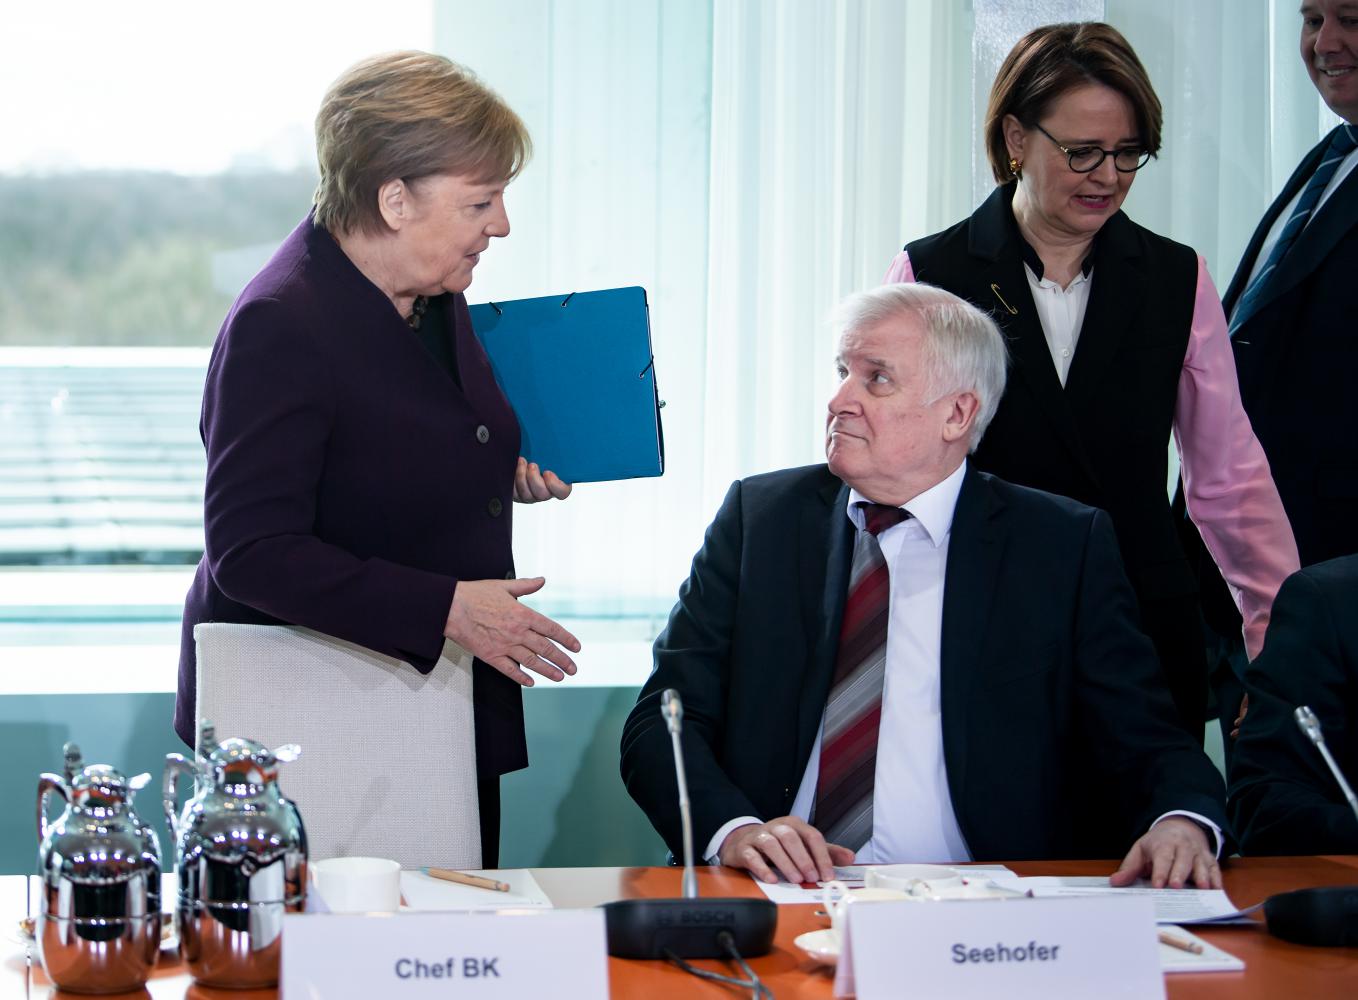 Muss das sein? Beim Integrationsgipfel in Berlin am 3. März will Horst Seehofer Kanzlerin Angela Merkel schon nicht mehr die Hand geben